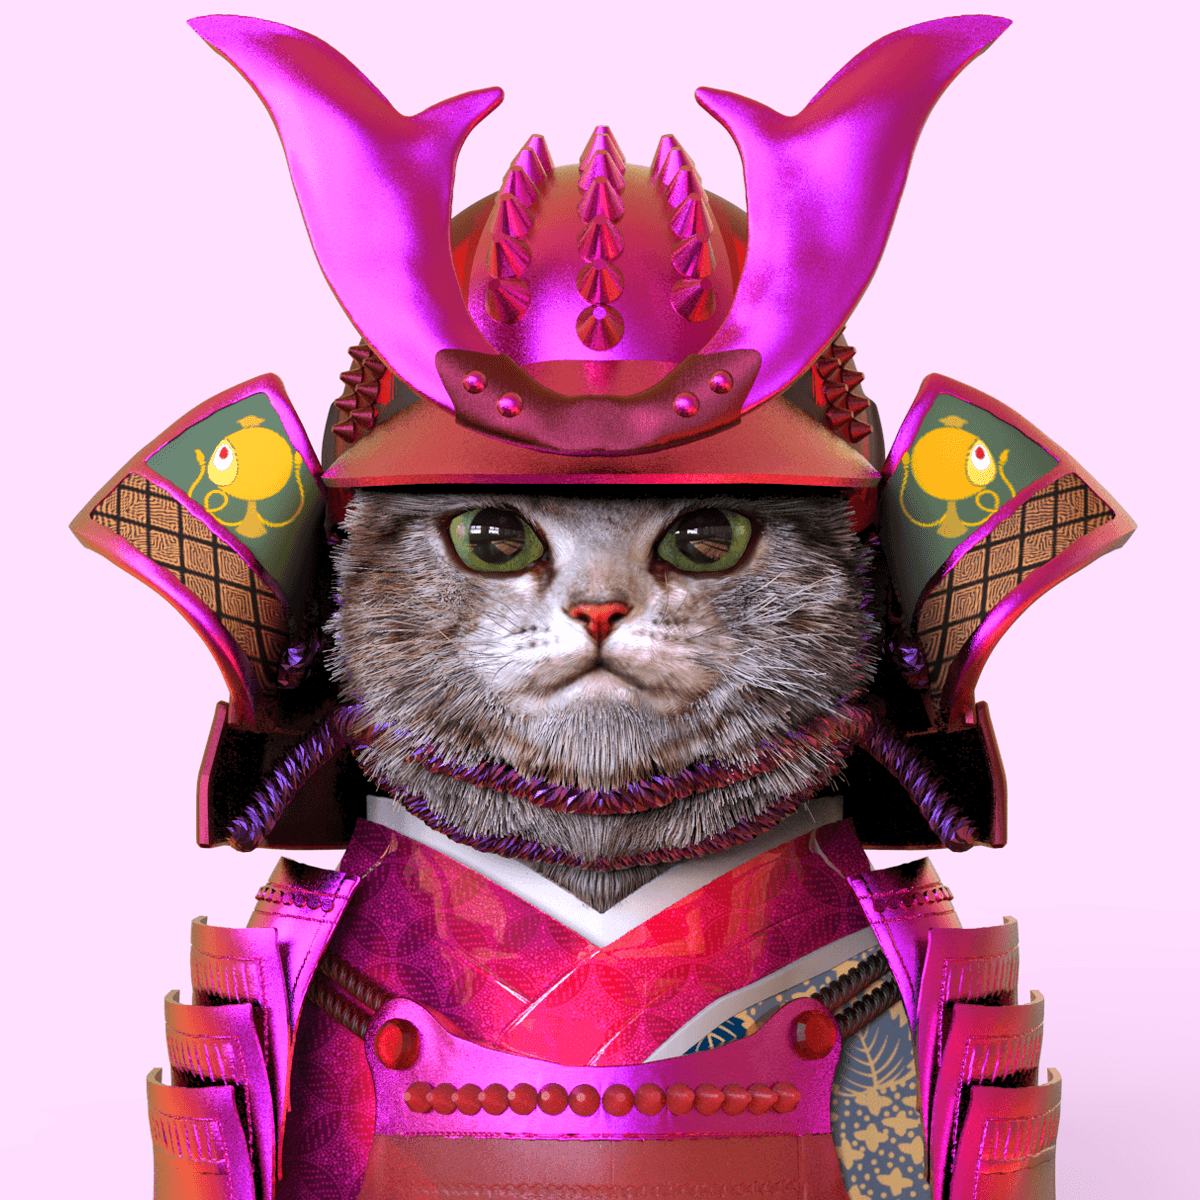 armored cat 038